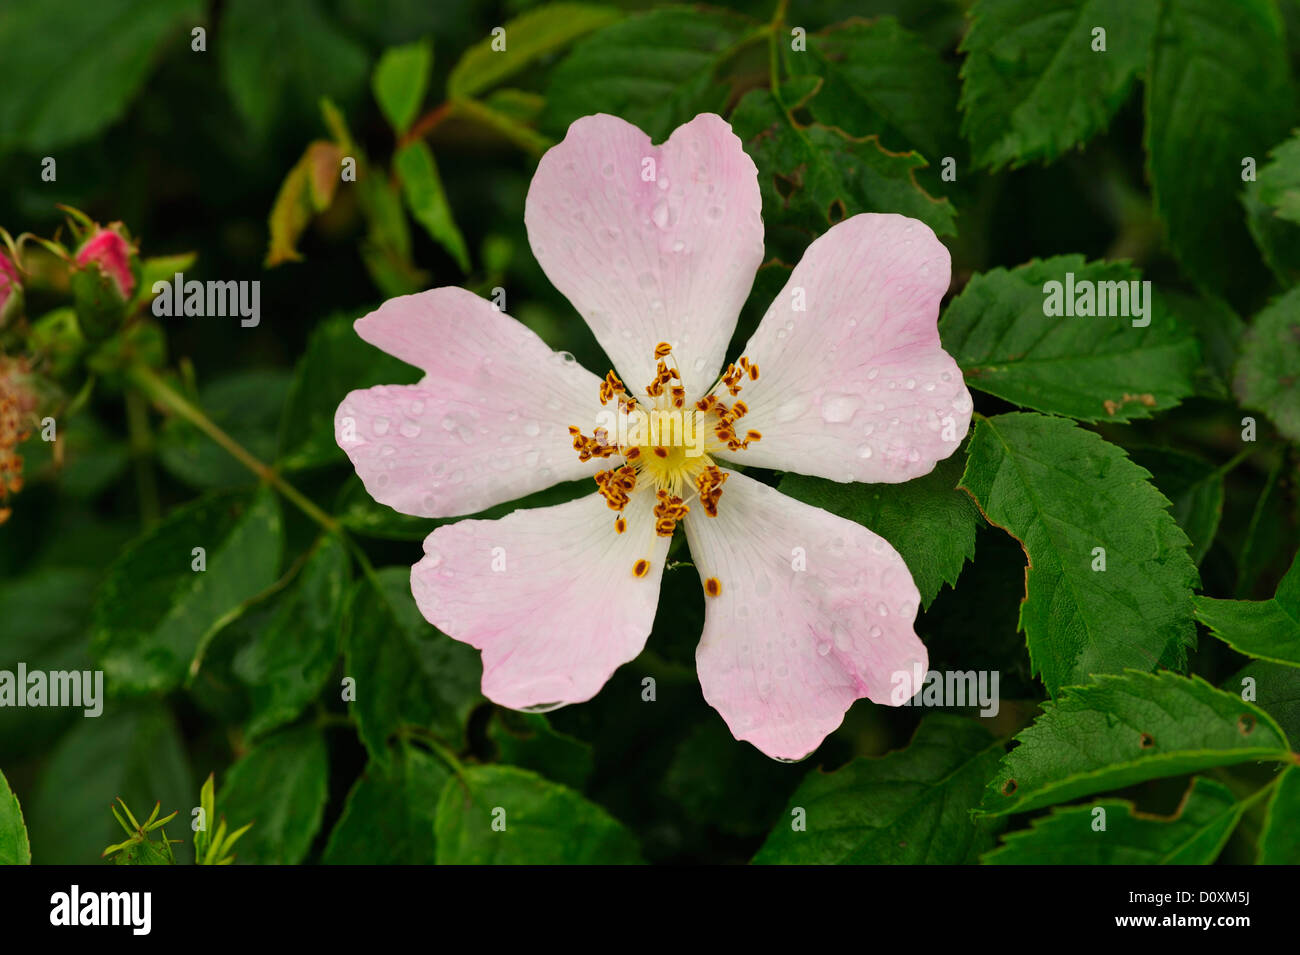 Wild rose, Dog Rose, Rosaceae, Rosa spec., Rose, flower, blossom, plant, Mecklenburg-Vorpommen, Germany Stock Photo